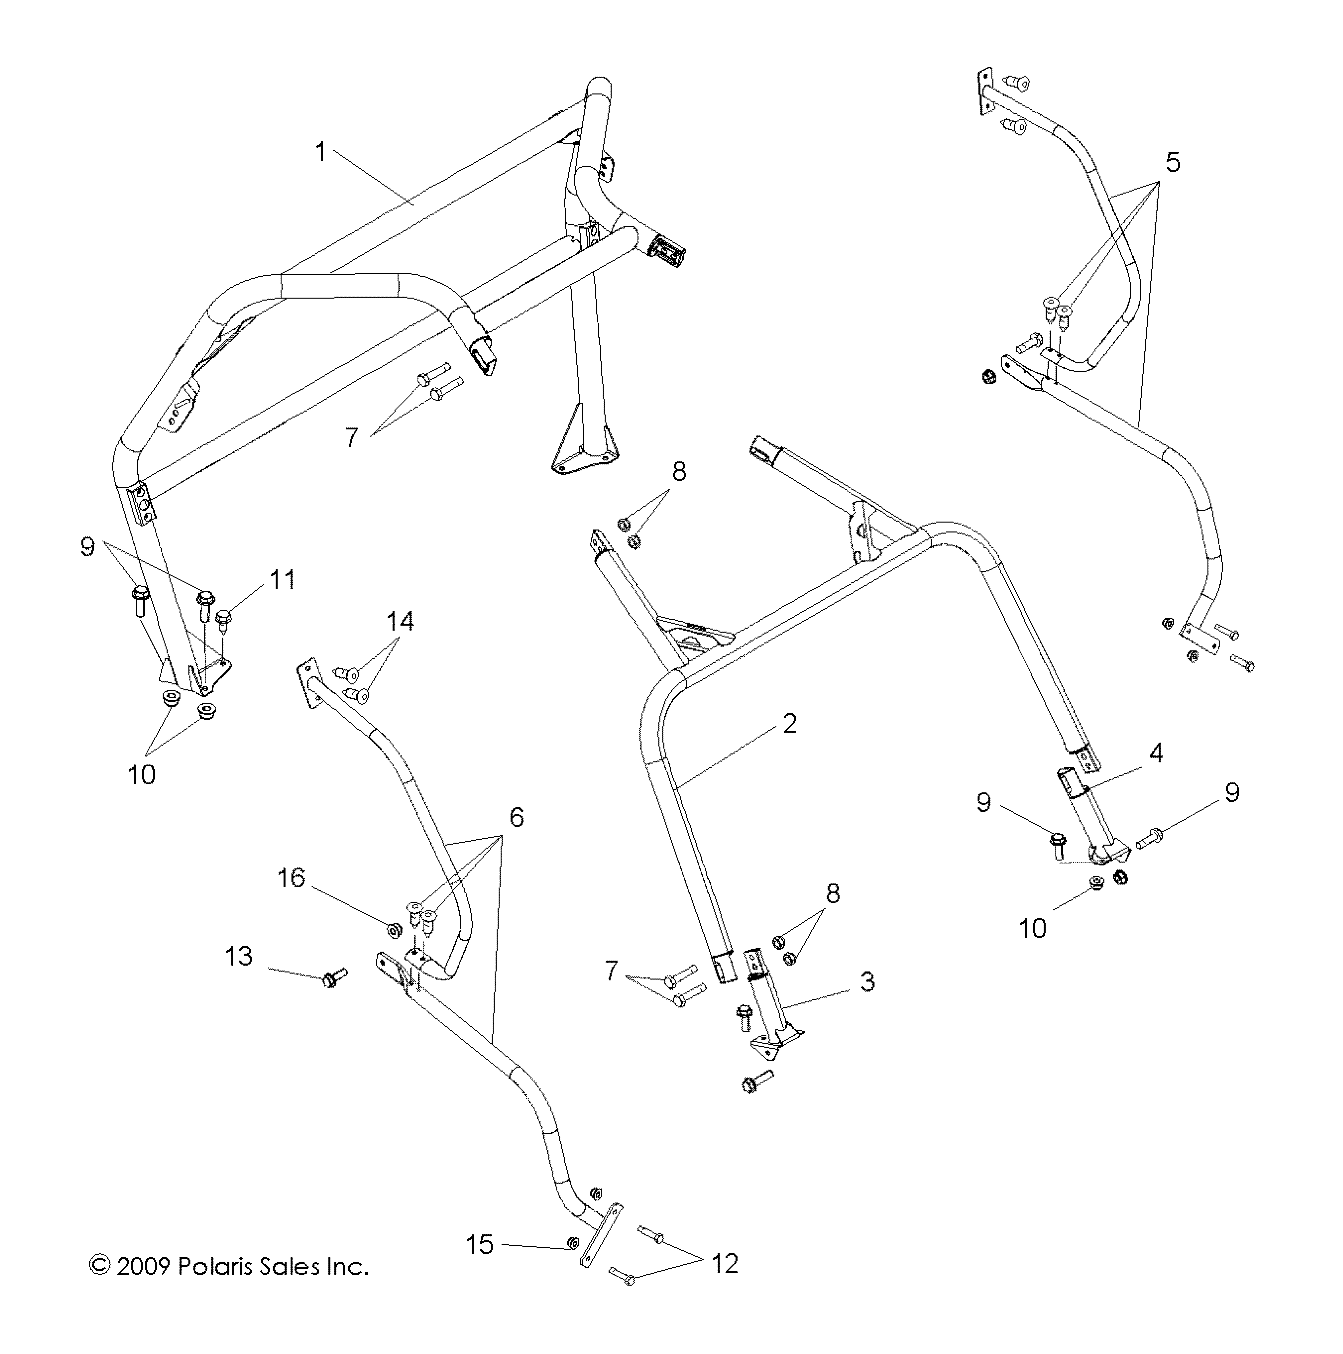 Foto diagrama Polaris que contem a peça 1016800-458